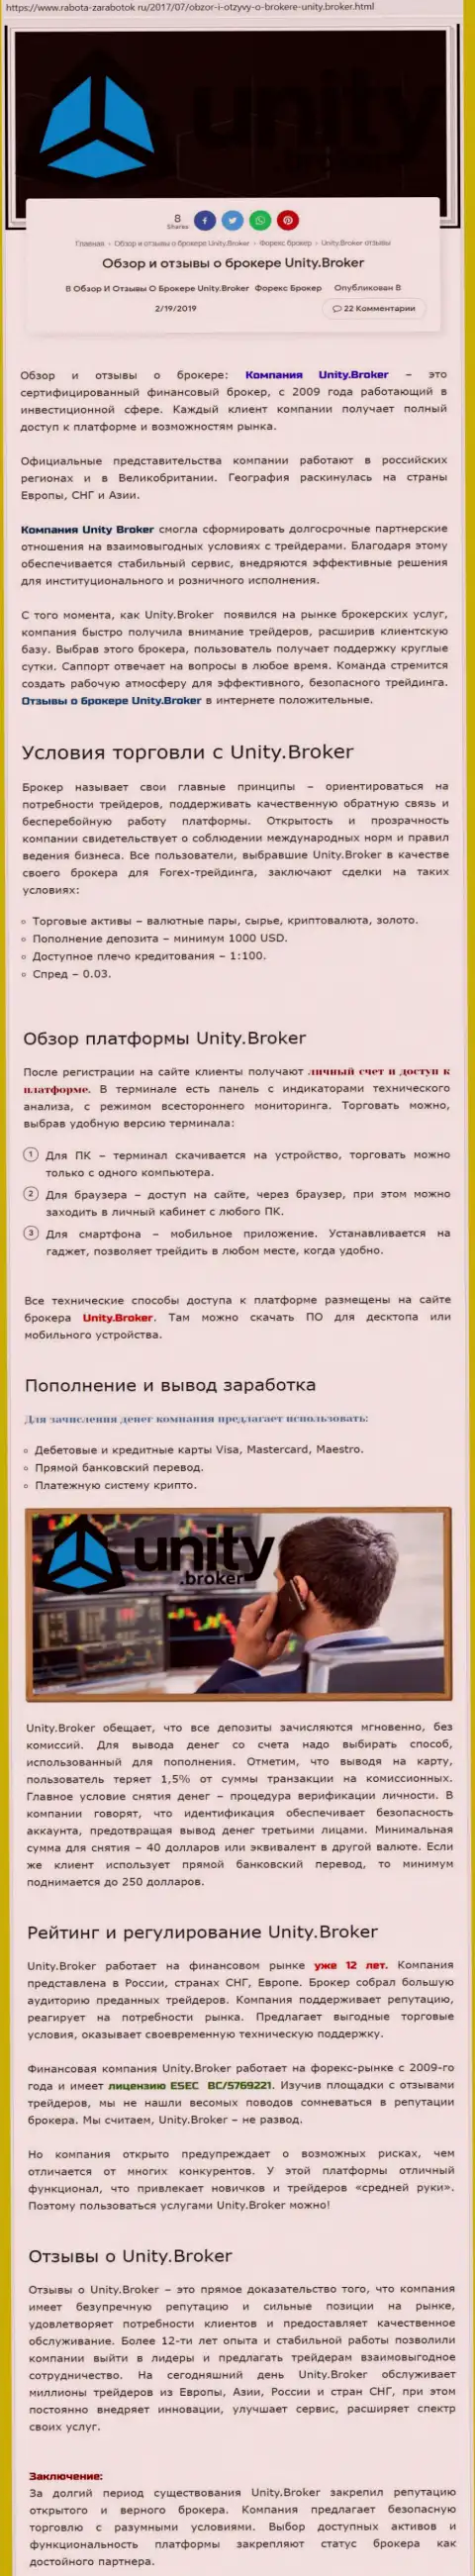 Обзорная информация Форекс дилера Юнити Брокер на web-сервисе Rabota Zarabotok Ru